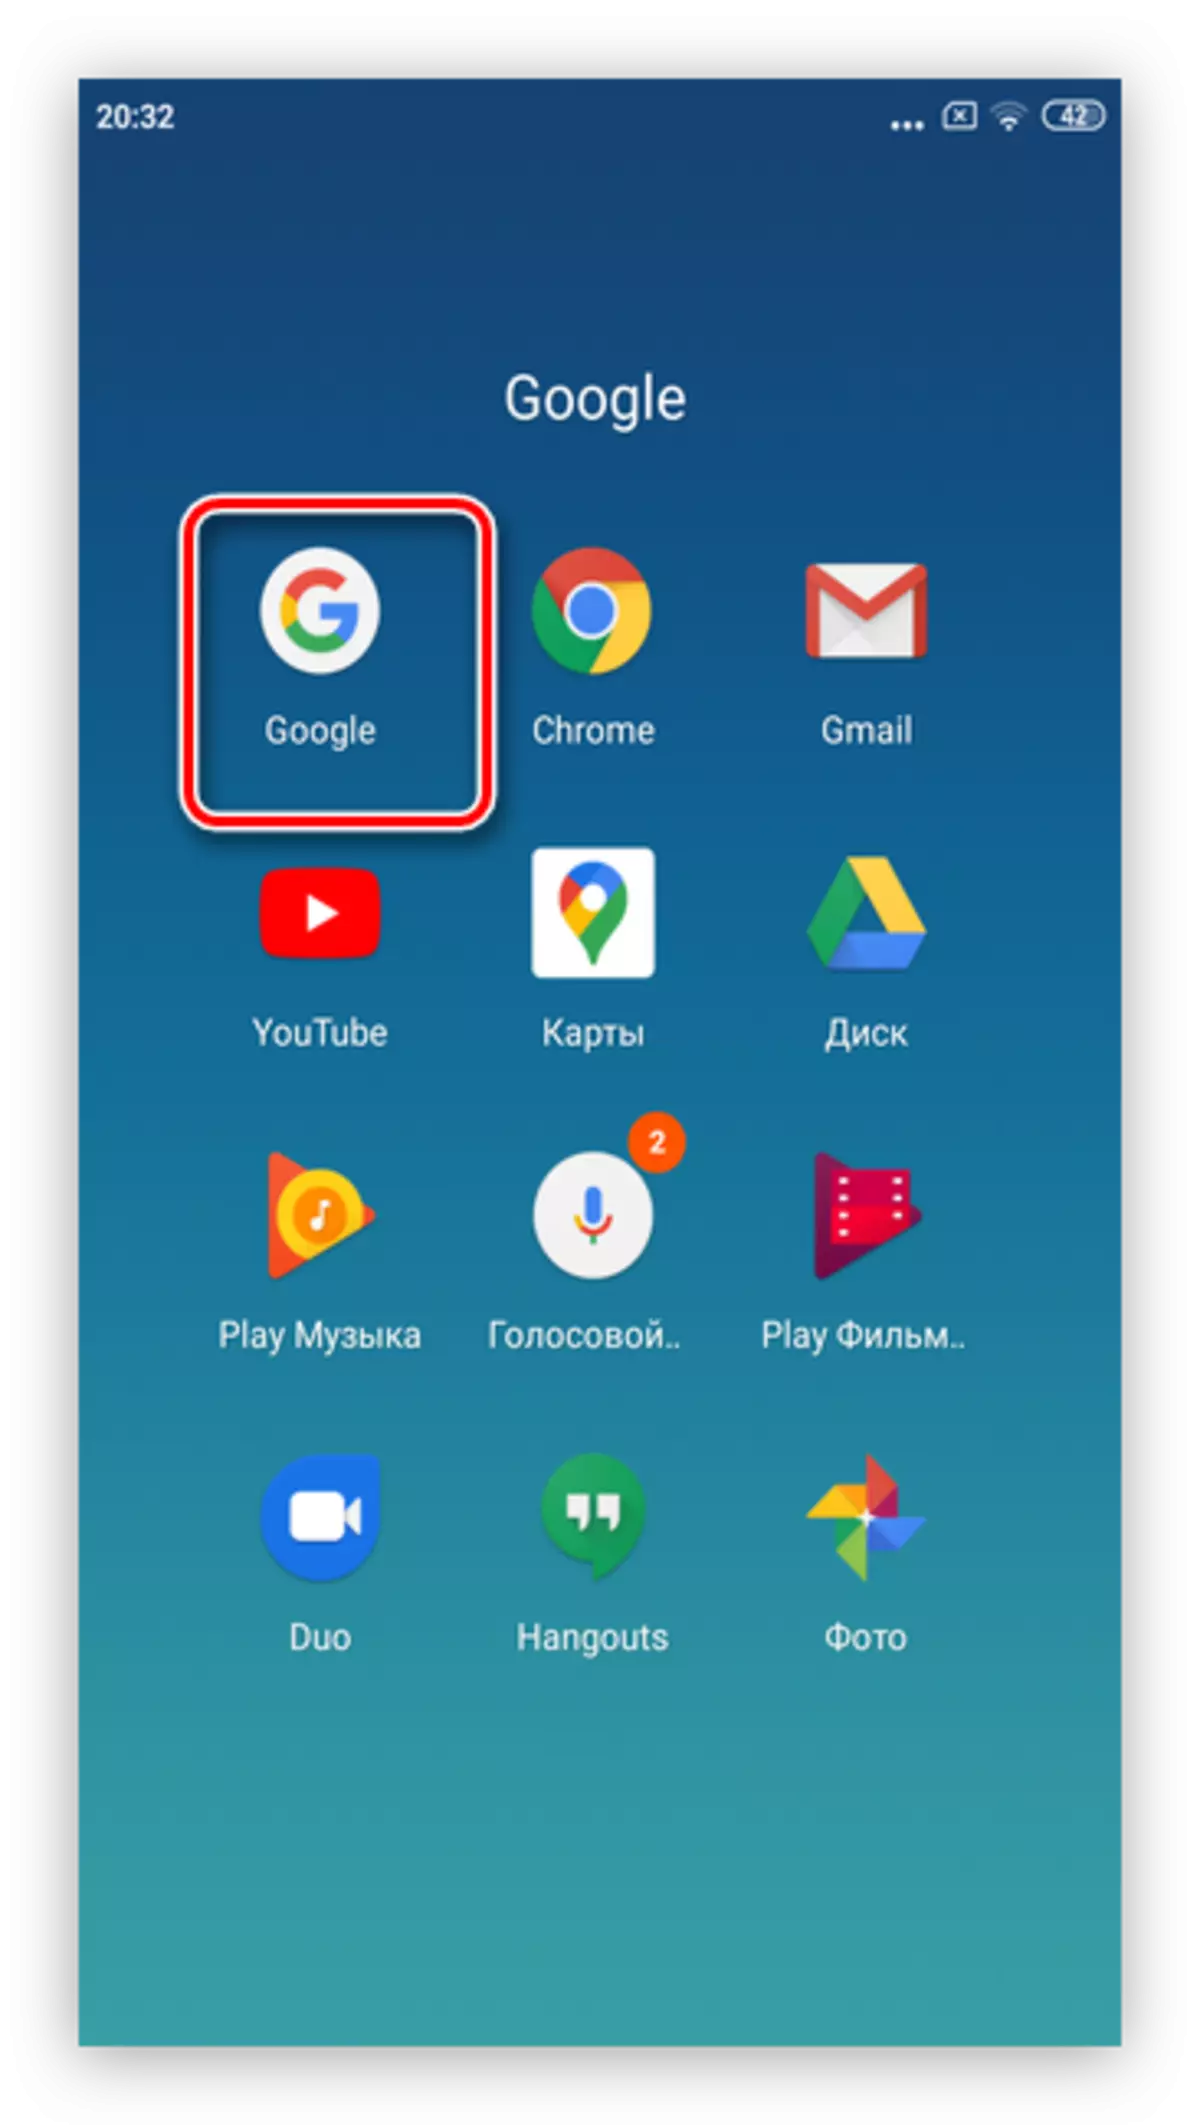 Otwórz aplikację Google, aby usunąć reklamy Google na smartfonach na Androida przez system